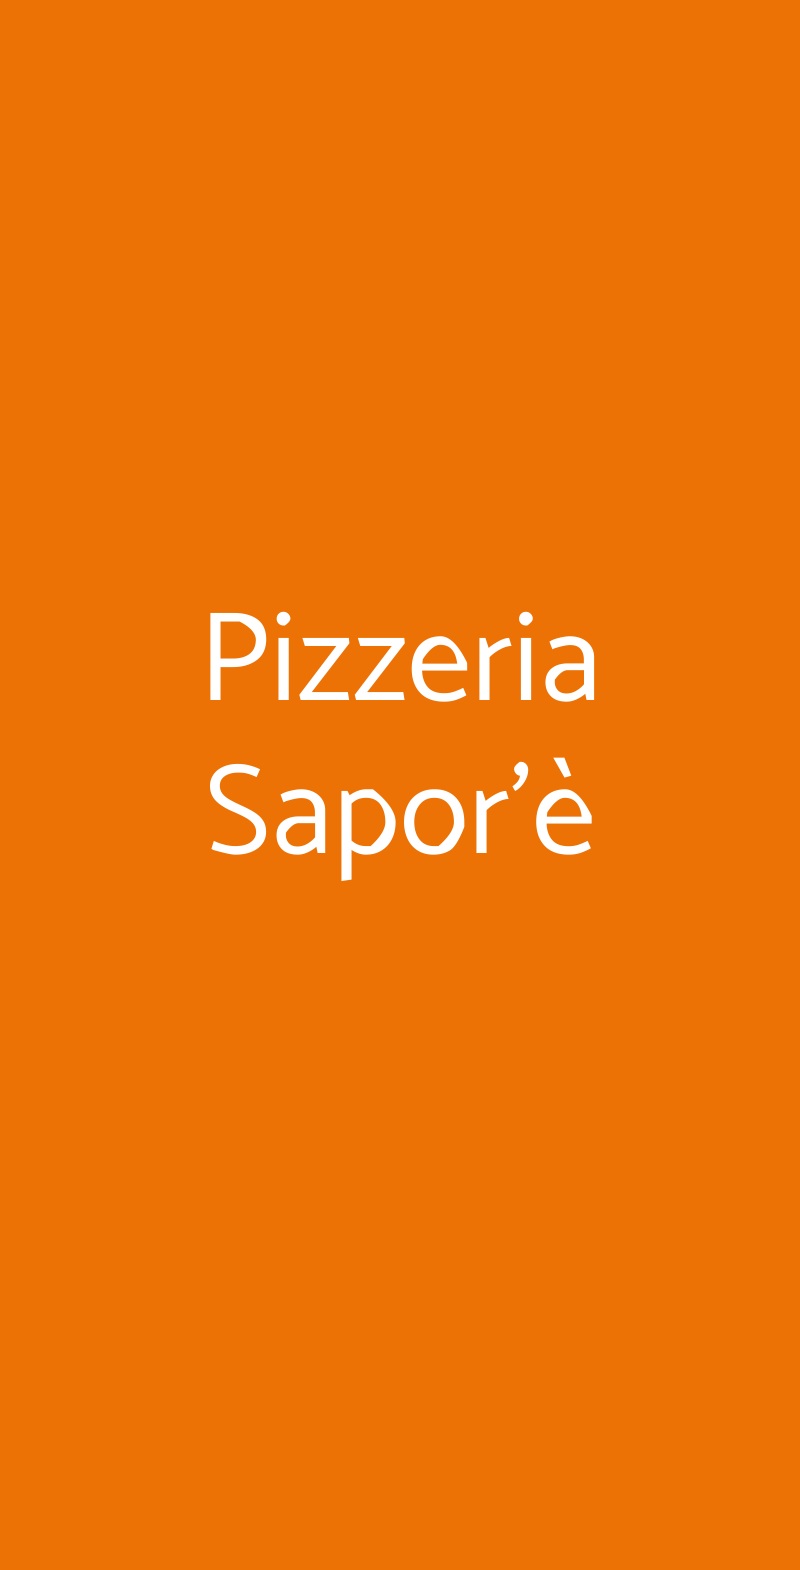 Pizzeria Sapor'è Parma menù 1 pagina